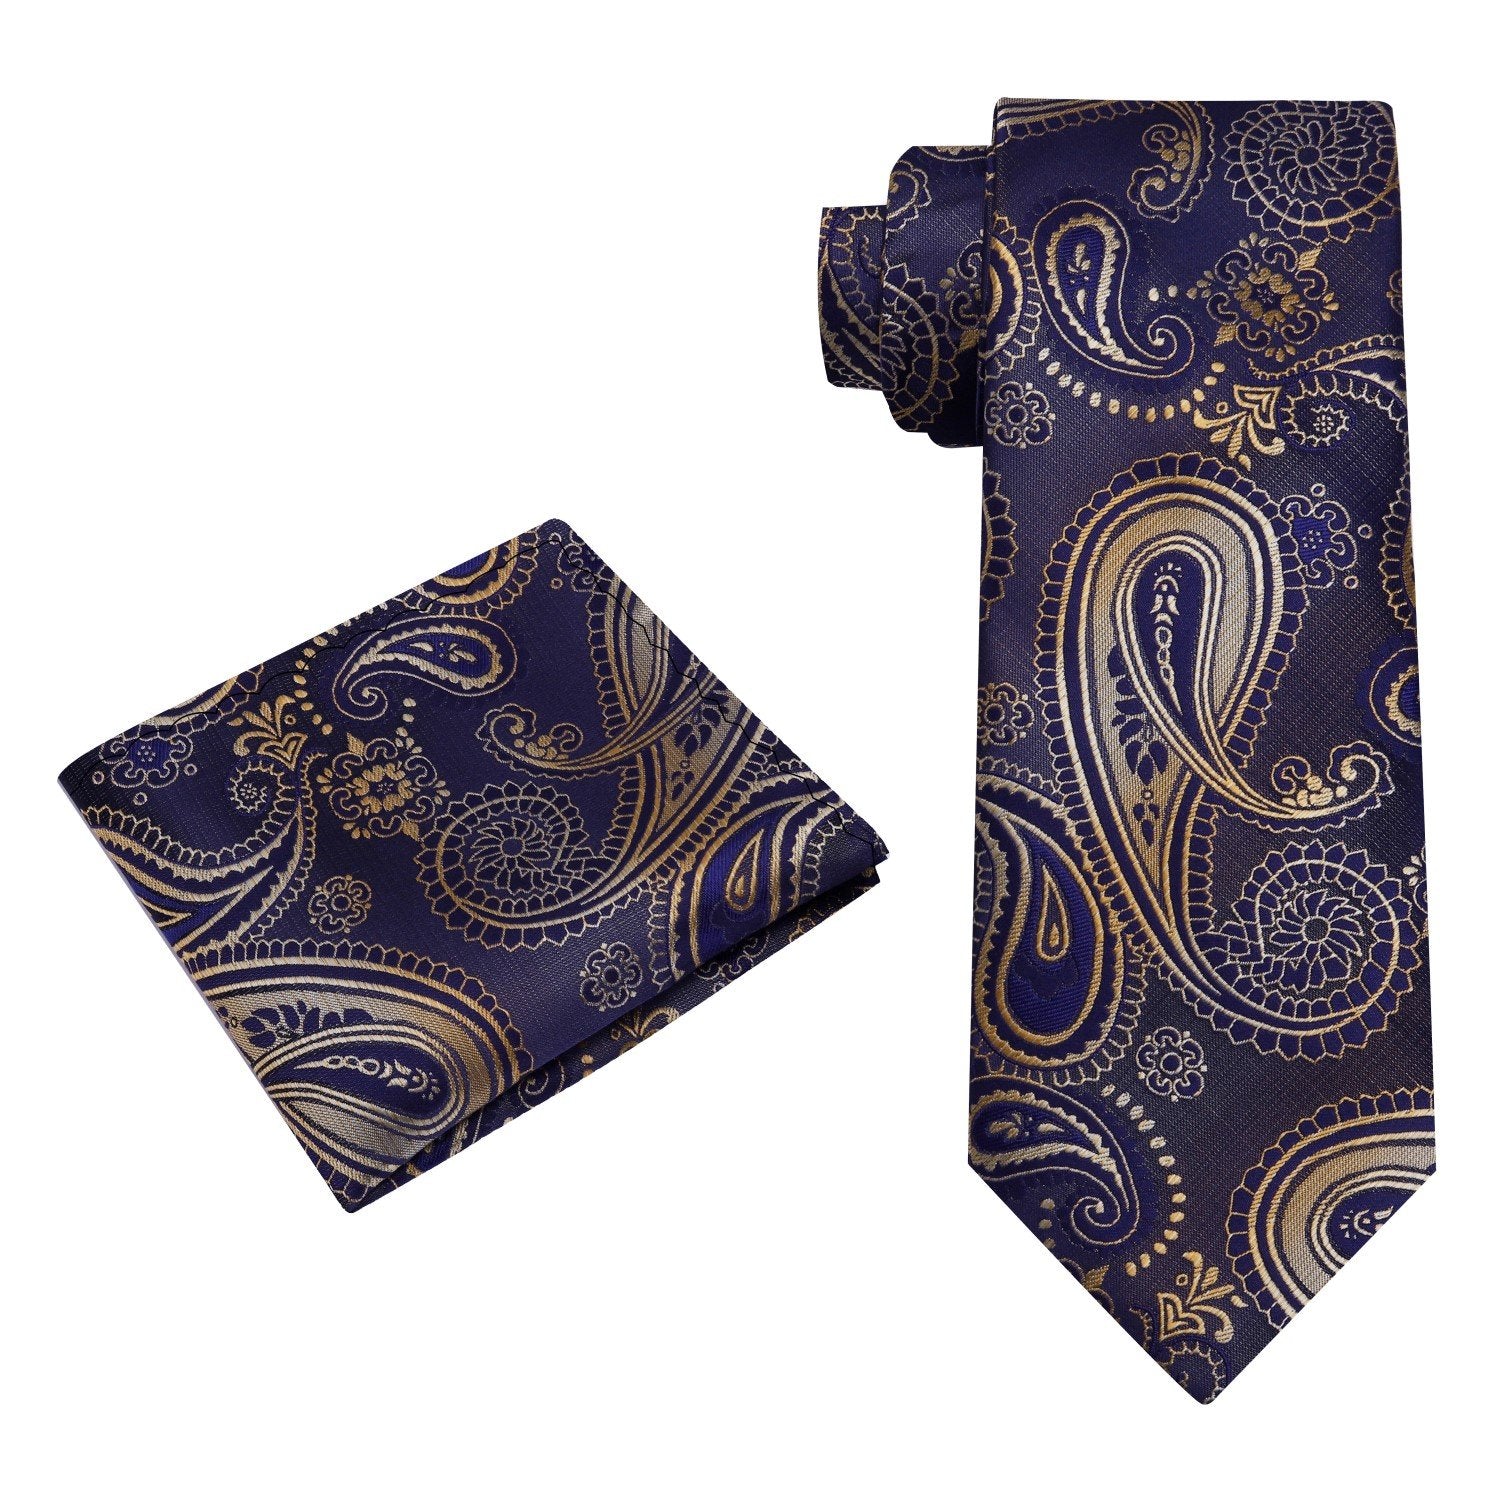 Alt view: A Dark Blue, Gold Paisley Pattern Silk Necktie, Matching Pocket Square